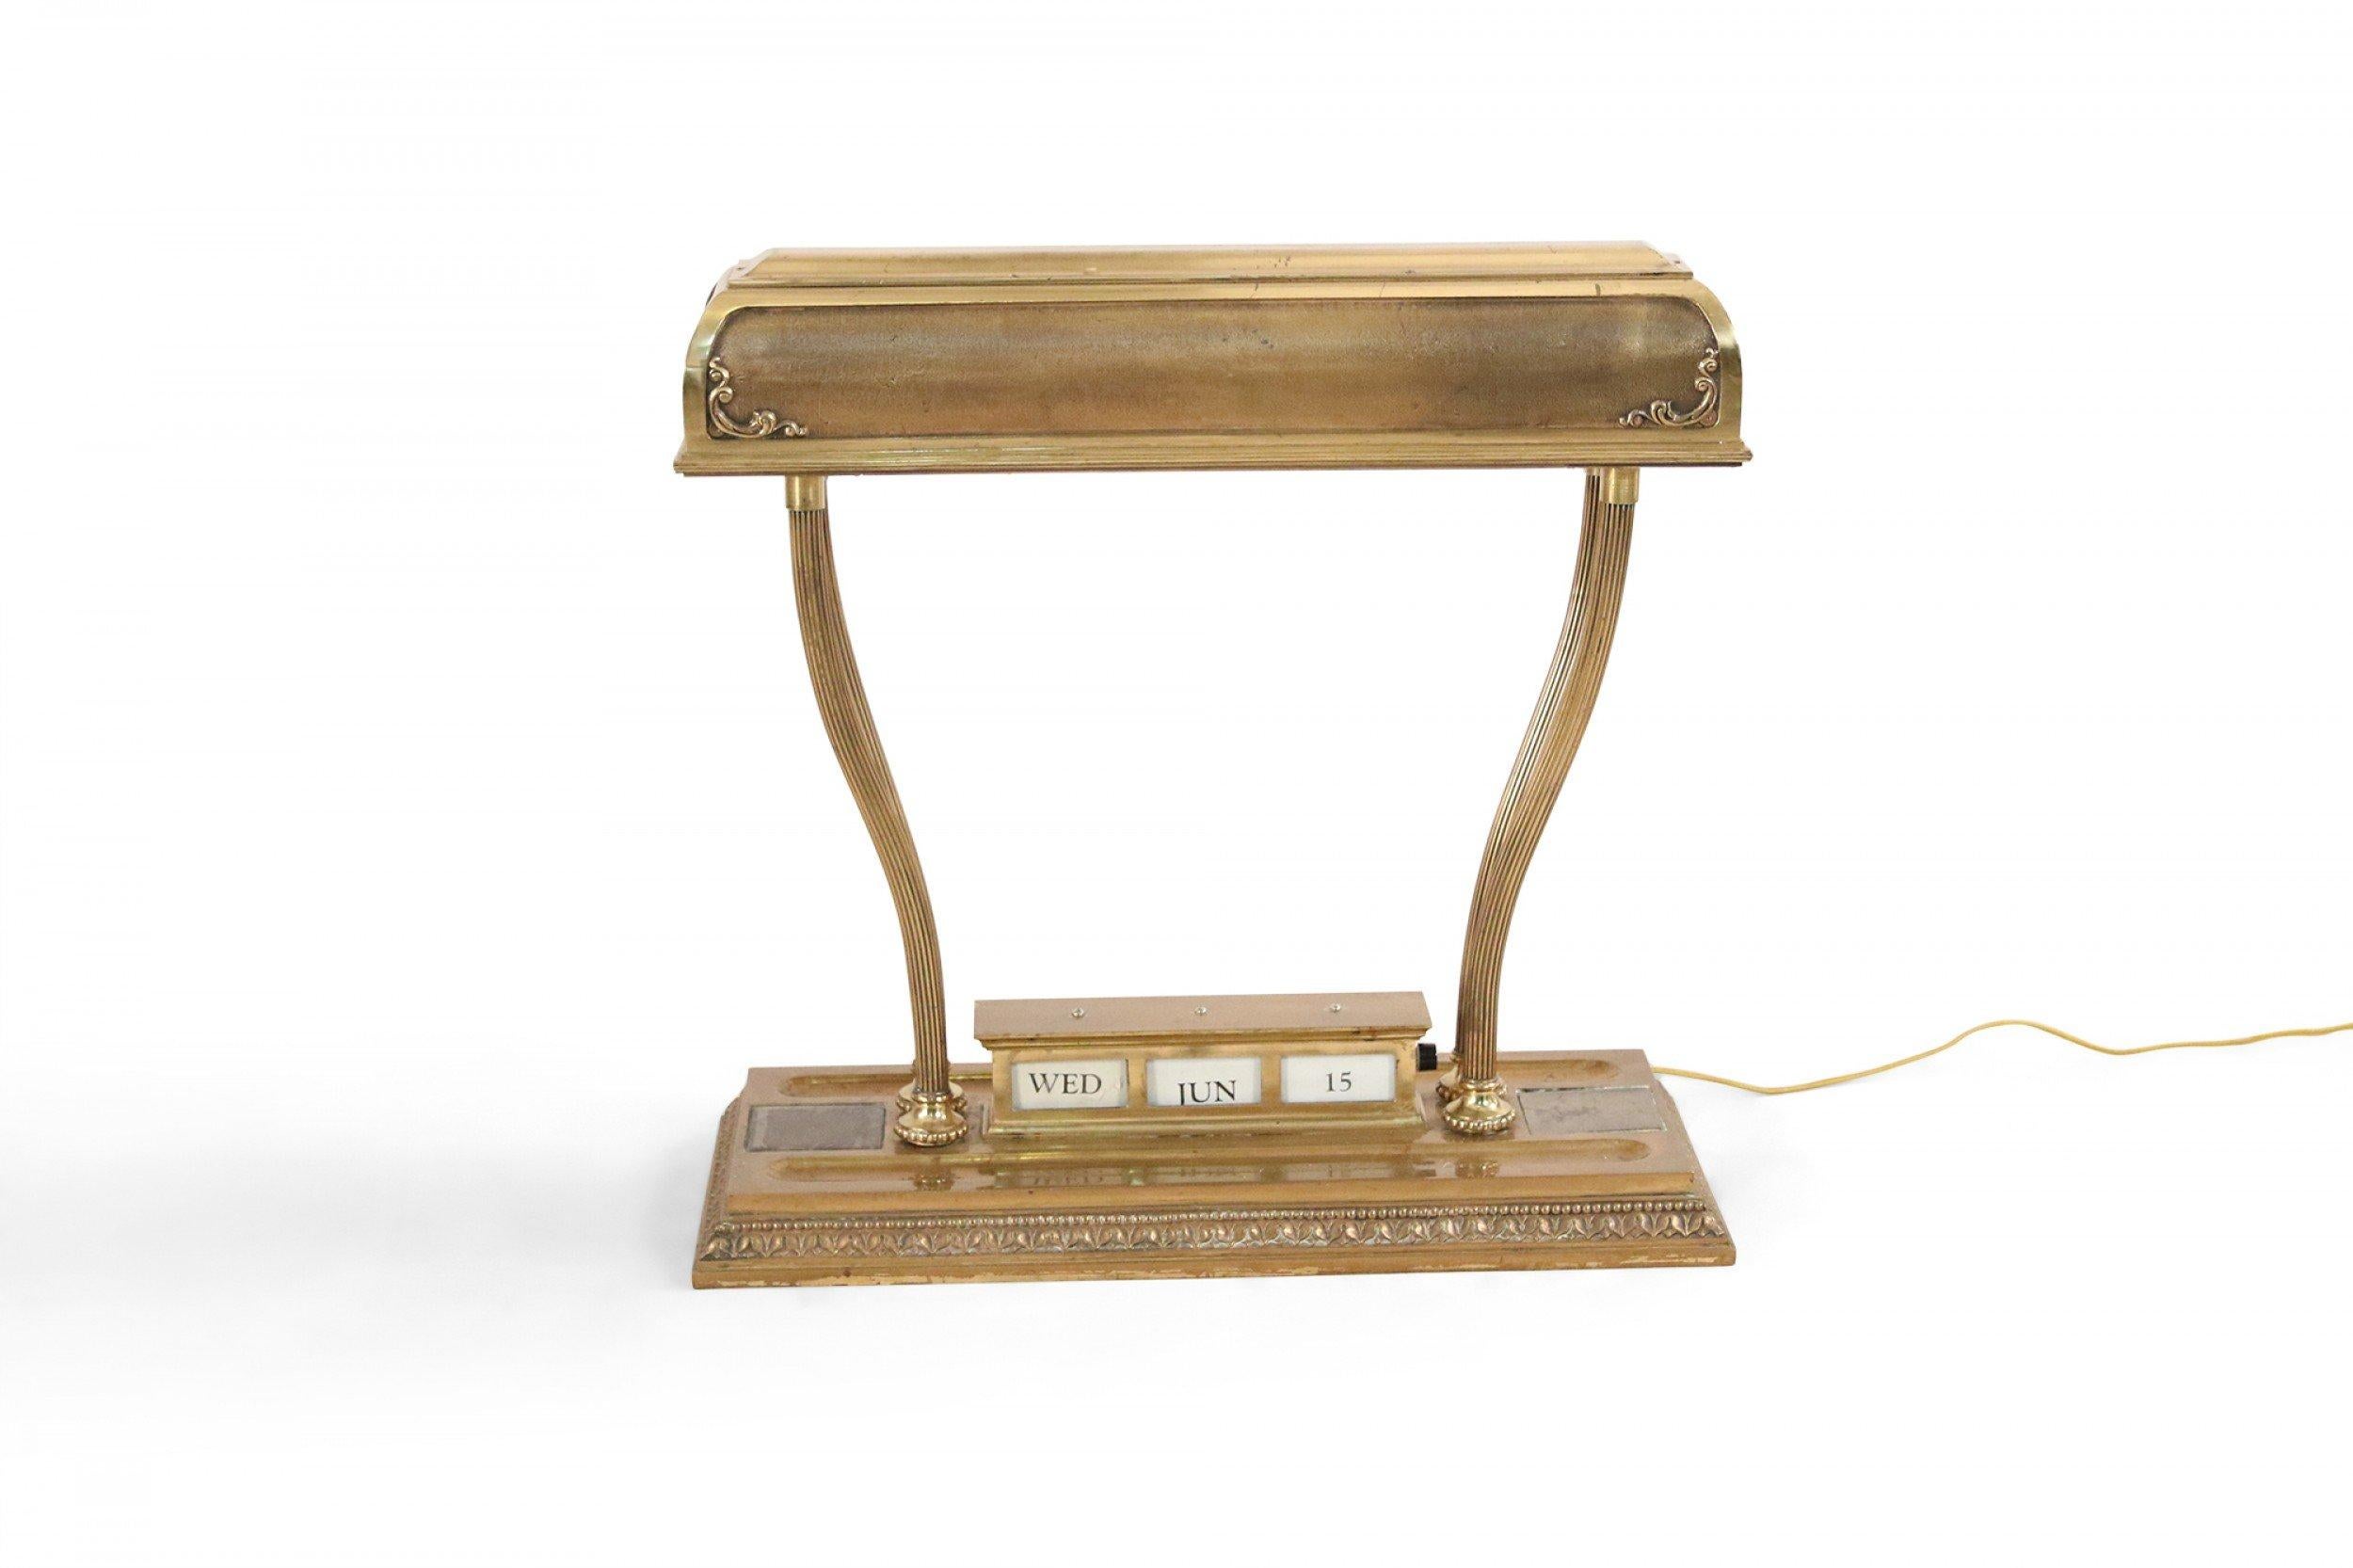 Lampe de bureau rectangulaire de l'époque victorienne américaine avec affichage du calendrier réglable sur une base rectangulaire supportant un grand abat-jour en laiton.